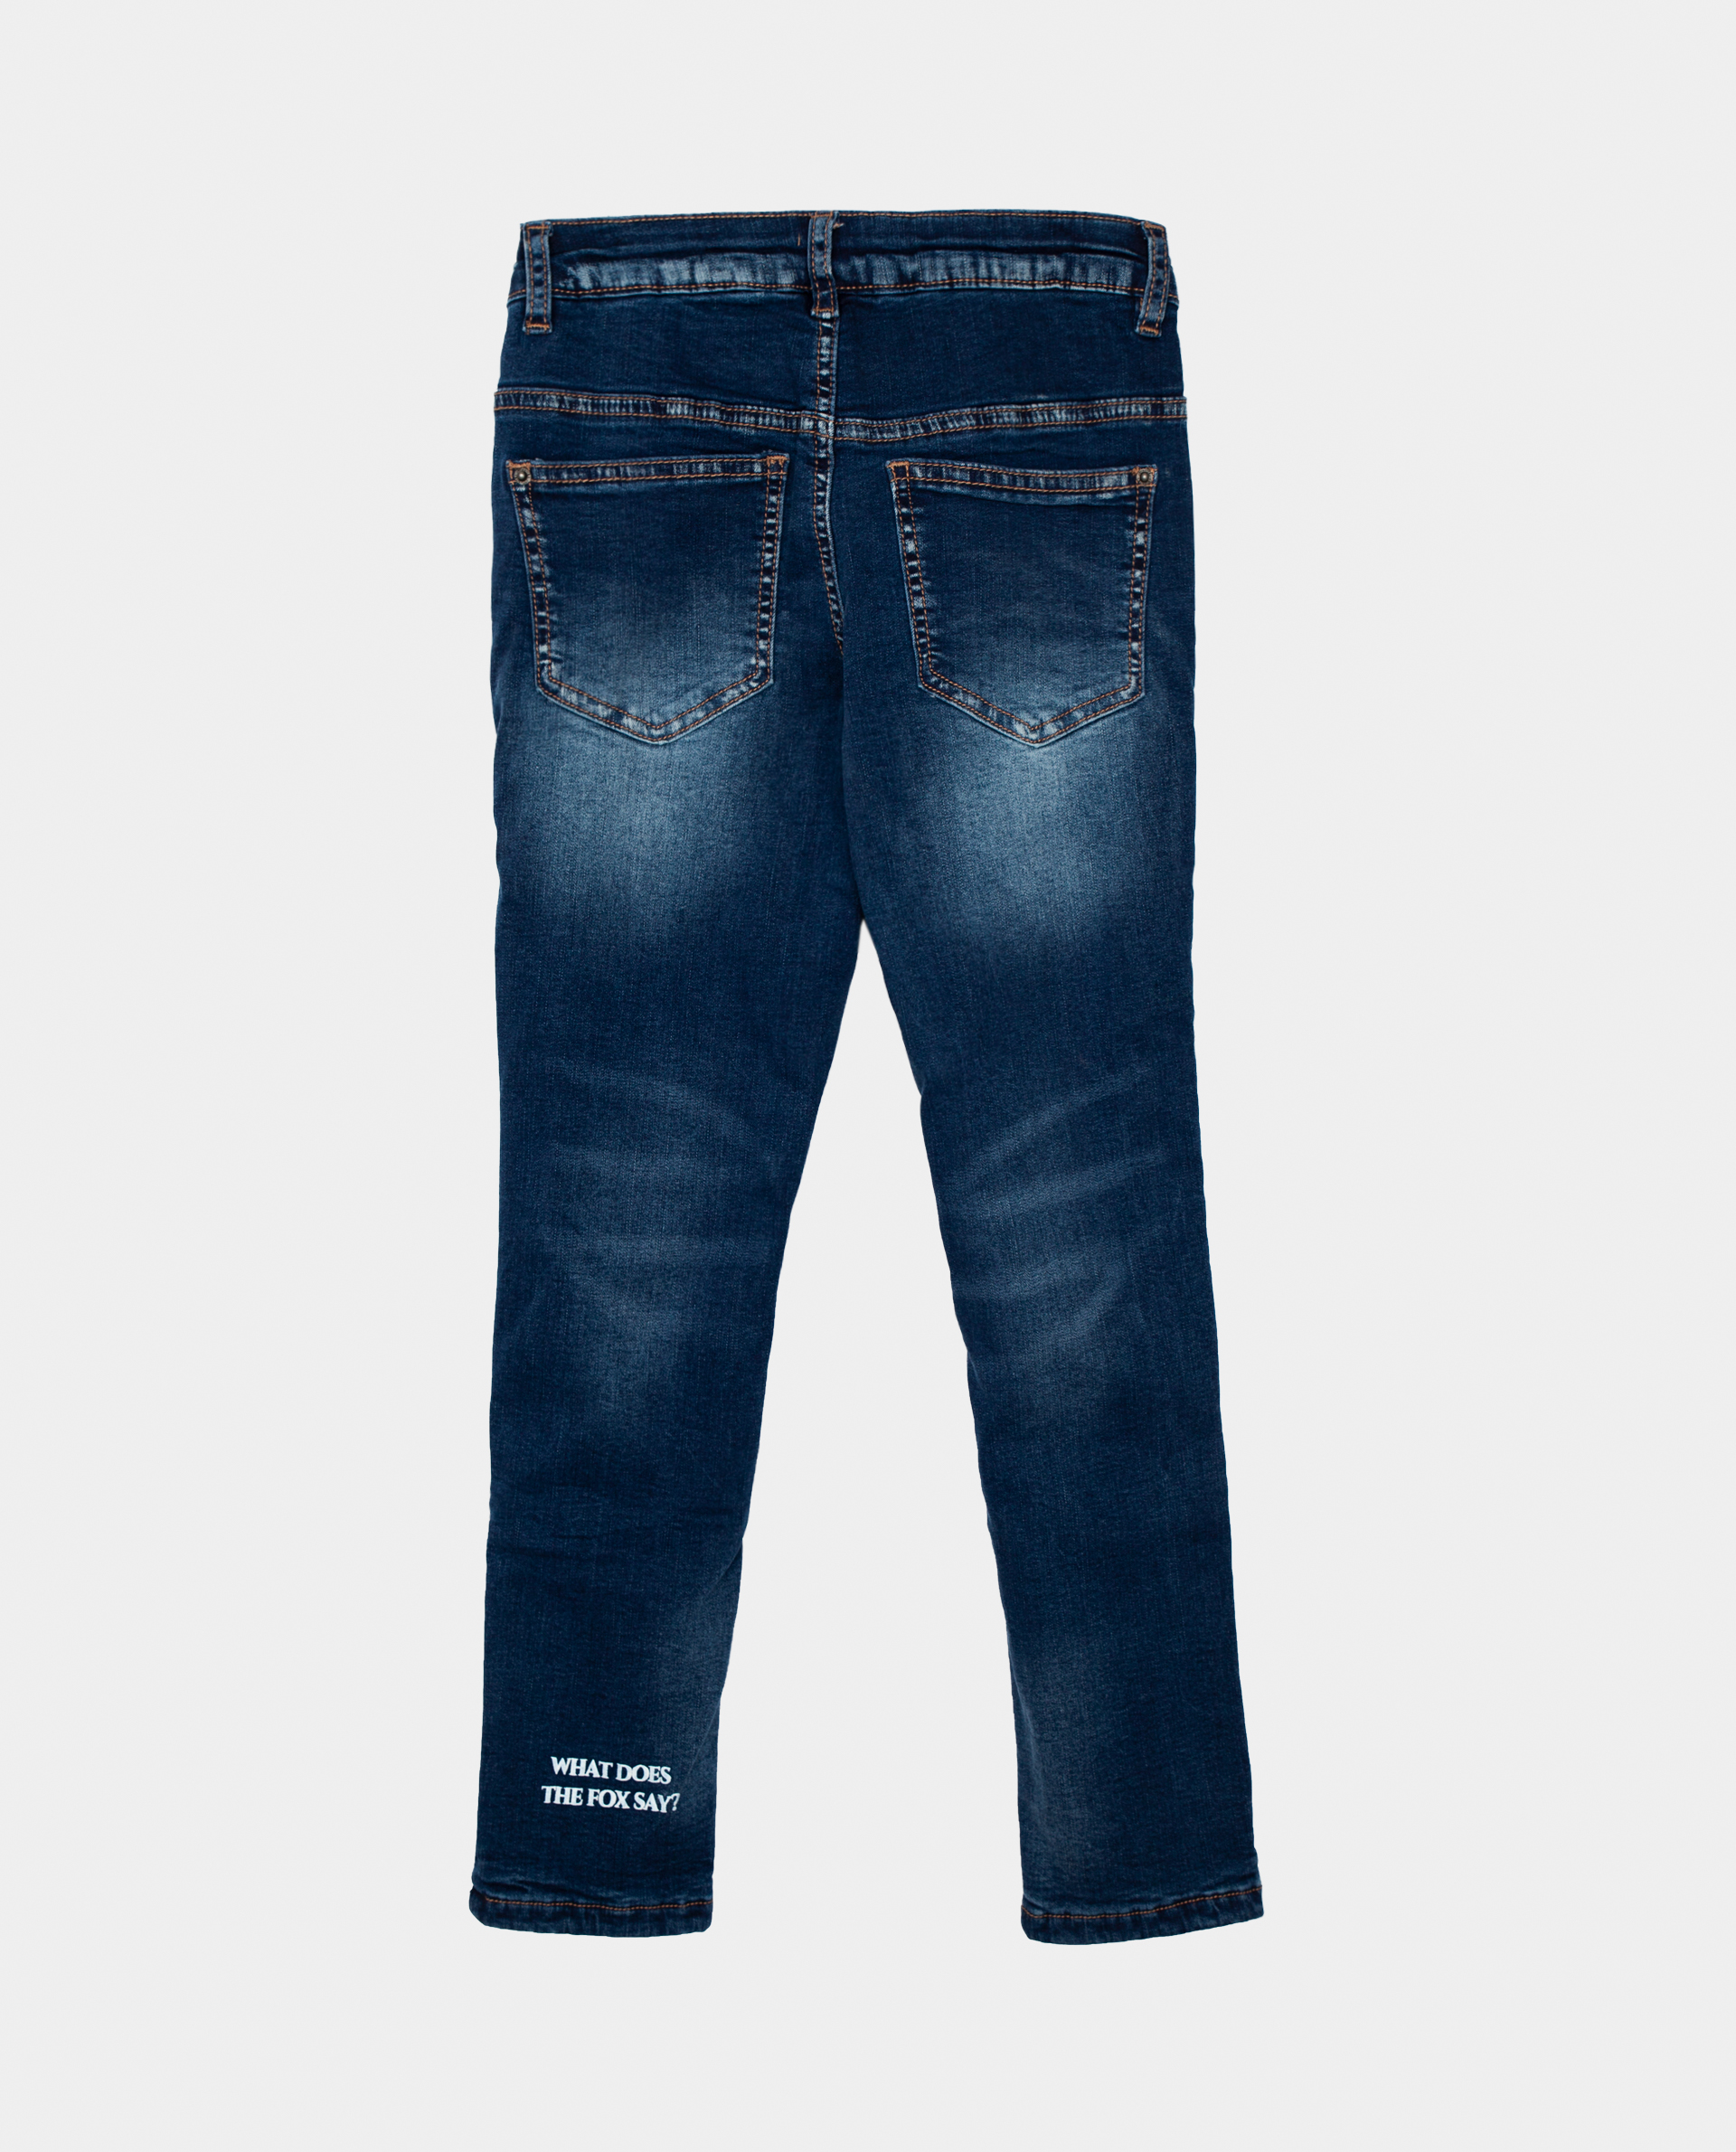 Голубые джинсы утепленные Gulliver 22002GMC6402, размер 116, цвет голубой regular fit / прямые - фото 2